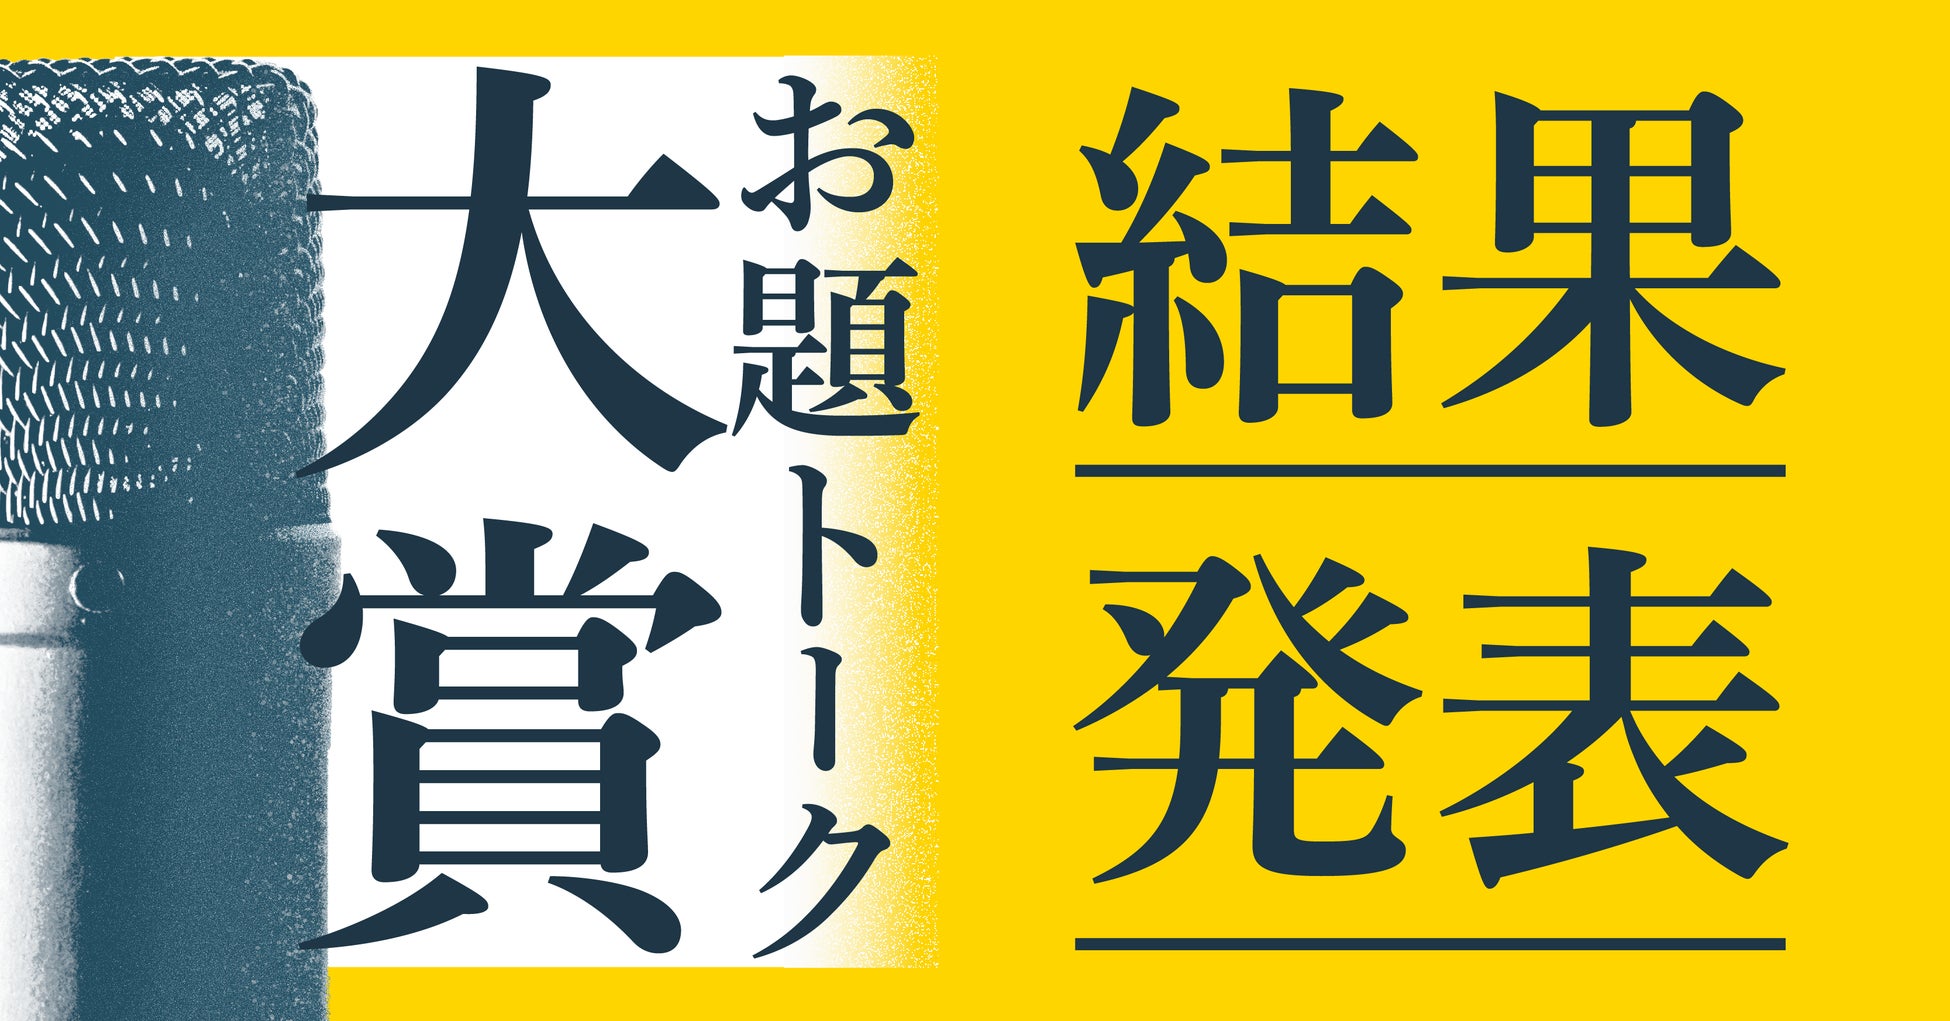 ウメダFM Be Happy！789が大阪市北区役所と連携協定を締結
大阪市北区の行政情報などを発信する新コーナー
～《北区TOPICS「わがまち北区」》を
2022年4月4日（月）から放送開始します～